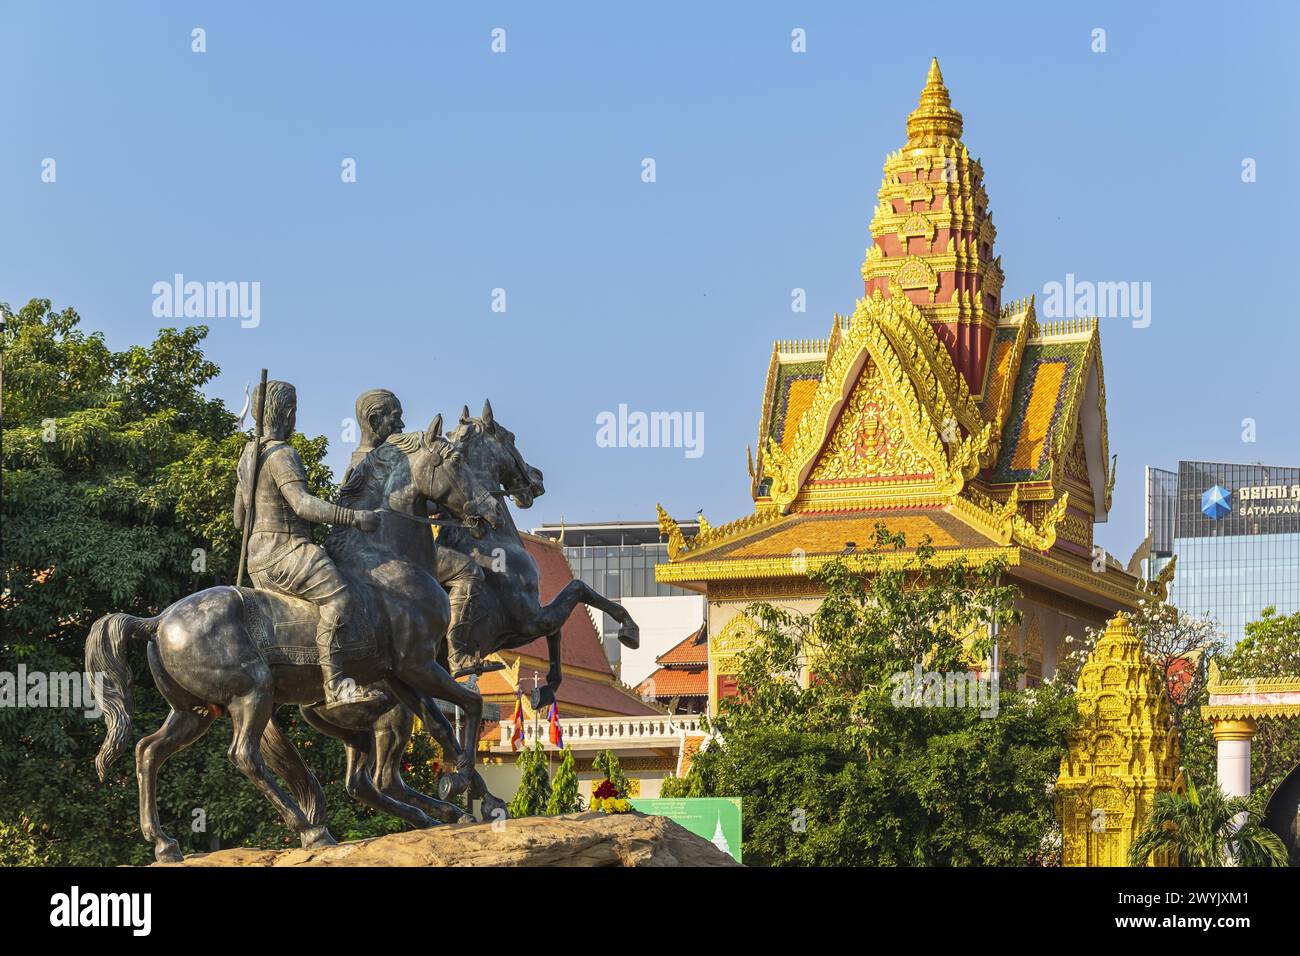 Camboya, Phnom Penh, distrito de Doun Penh, Monumento de los Guerreros Reales Decho Meas y Decho Yat frente a Wat Ounalom, templo budista fundado en el siglo XV Foto de stock